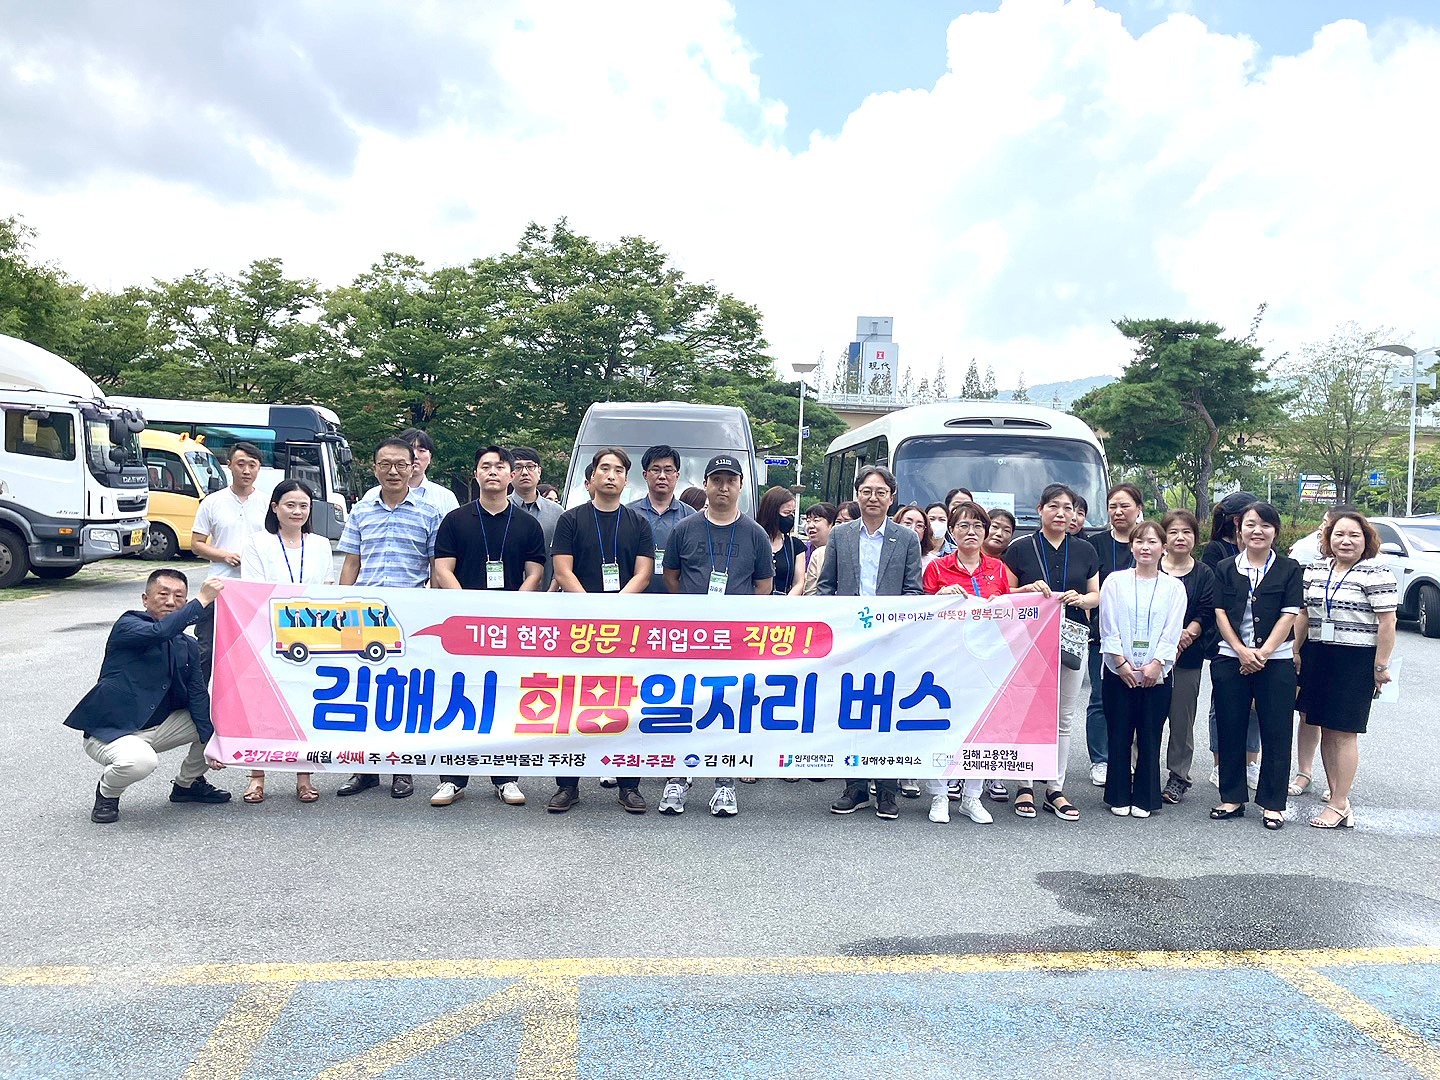 (김해시 희망일자리버스 여섯 번째 운행)단체사진1